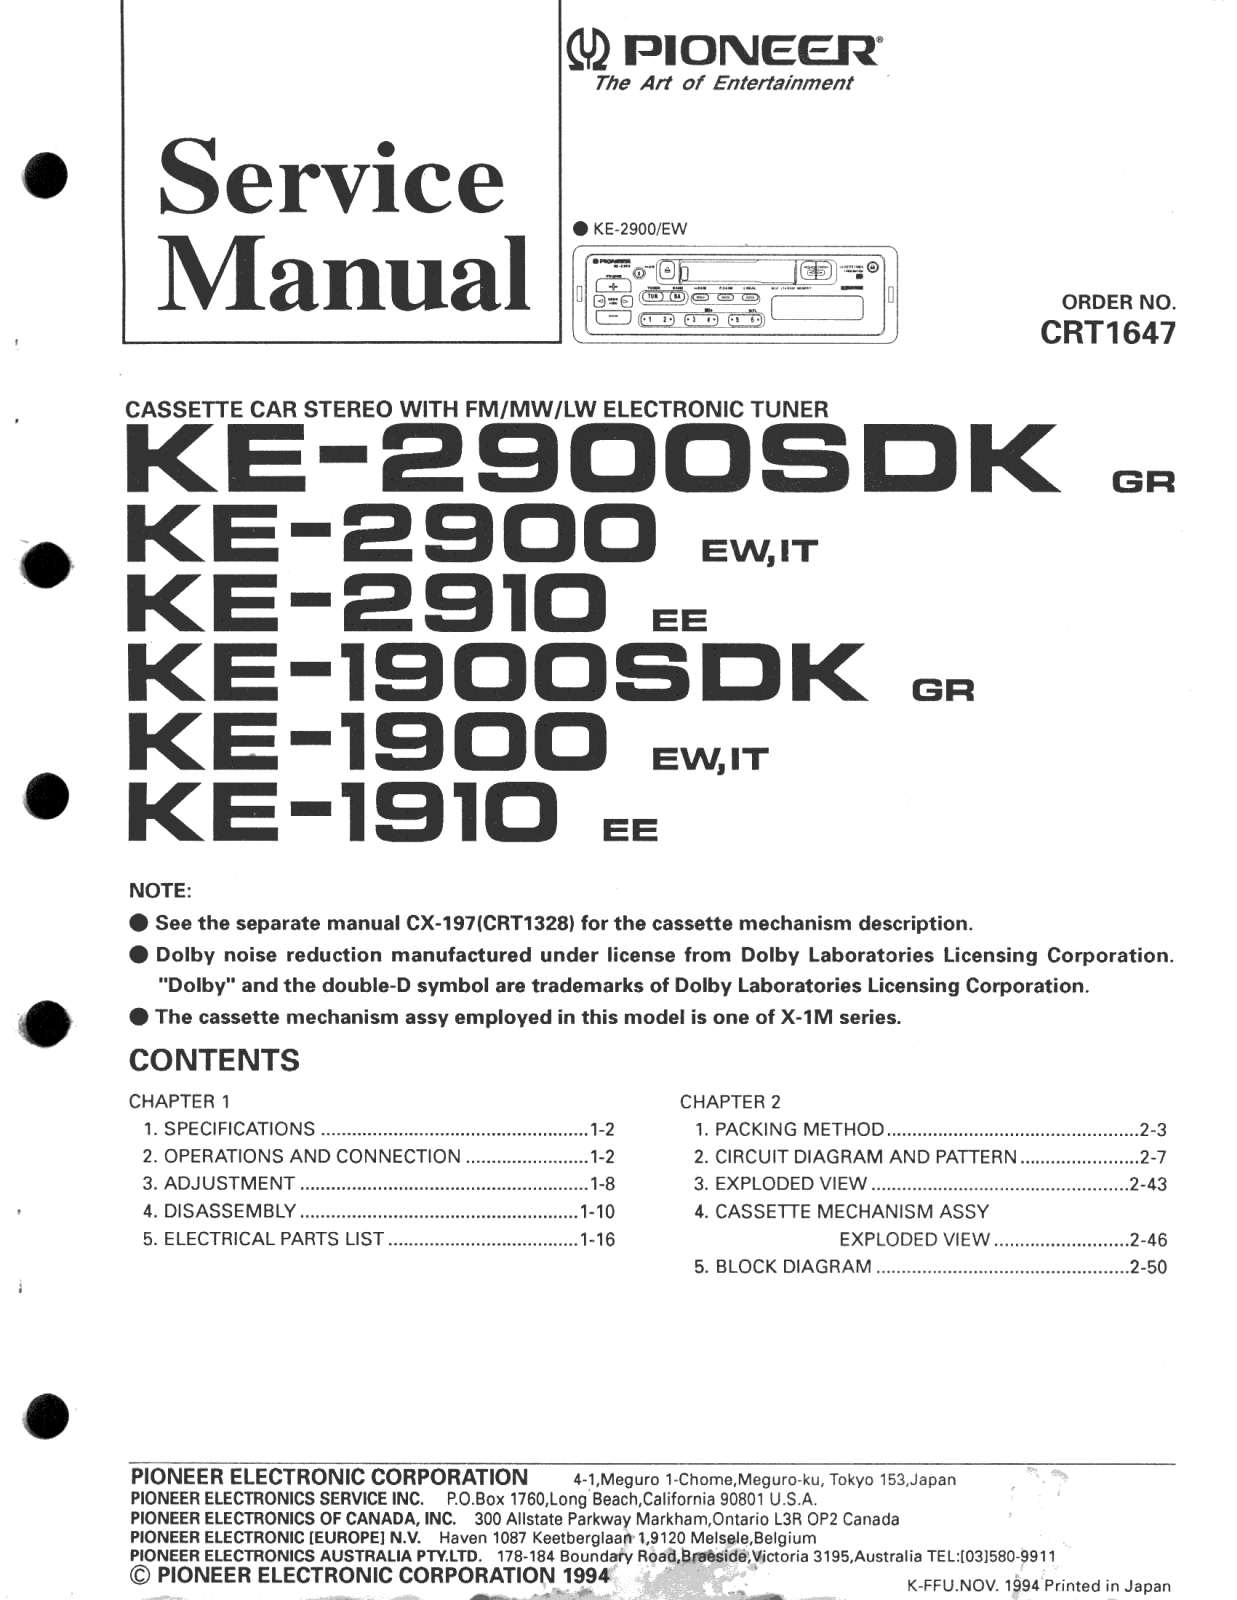 Pioneer KE-2900, KE-2910, KE-1900, KE-1910 Service Manual